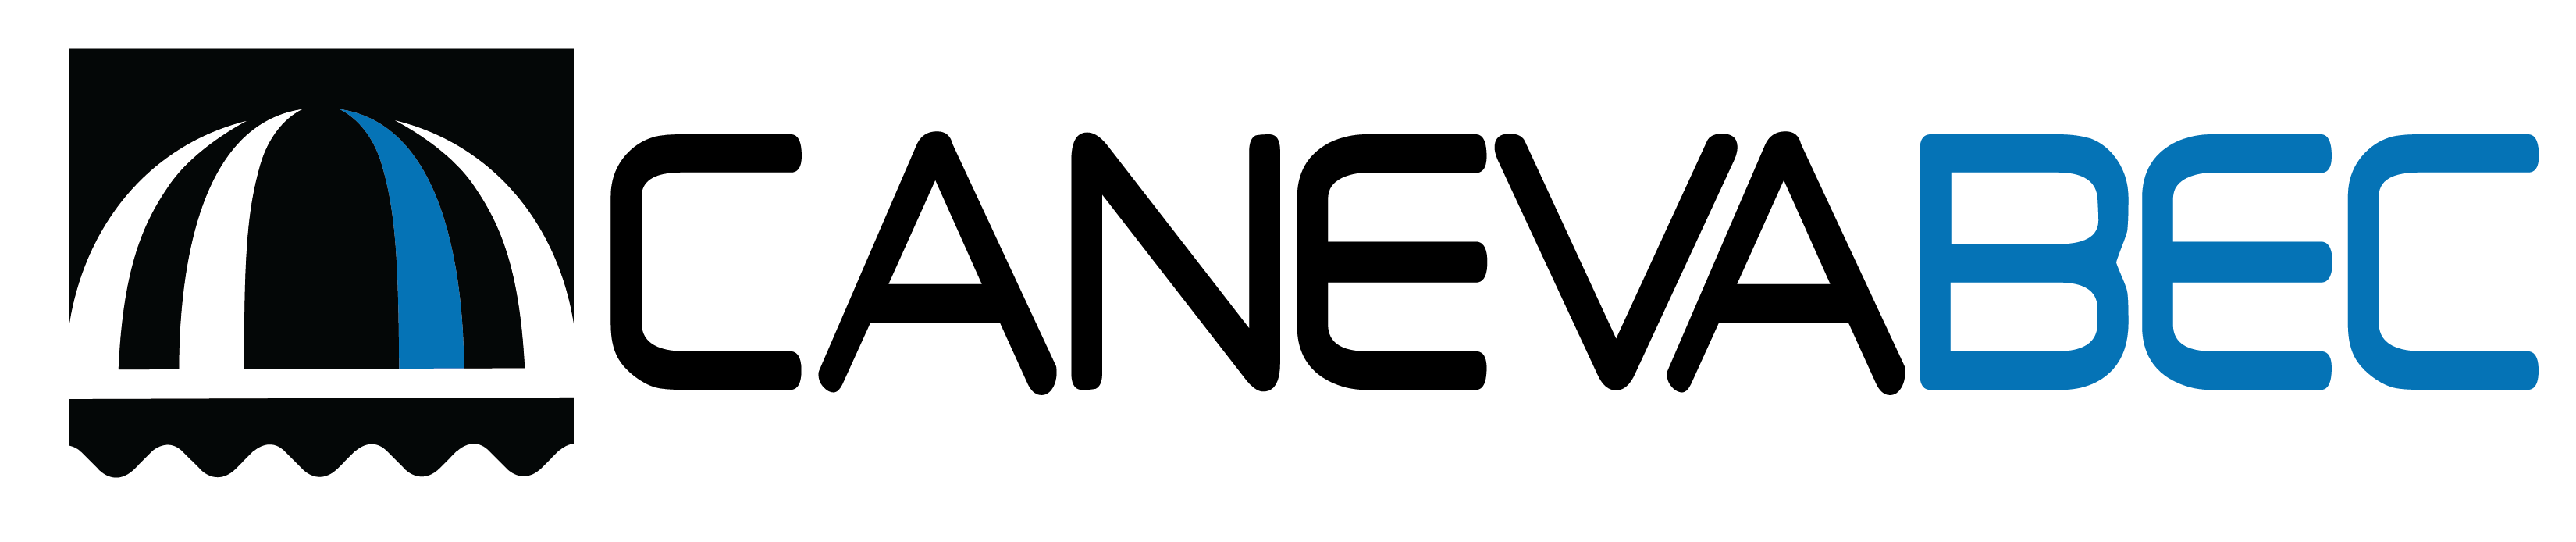 canevabec2013 logo officiel